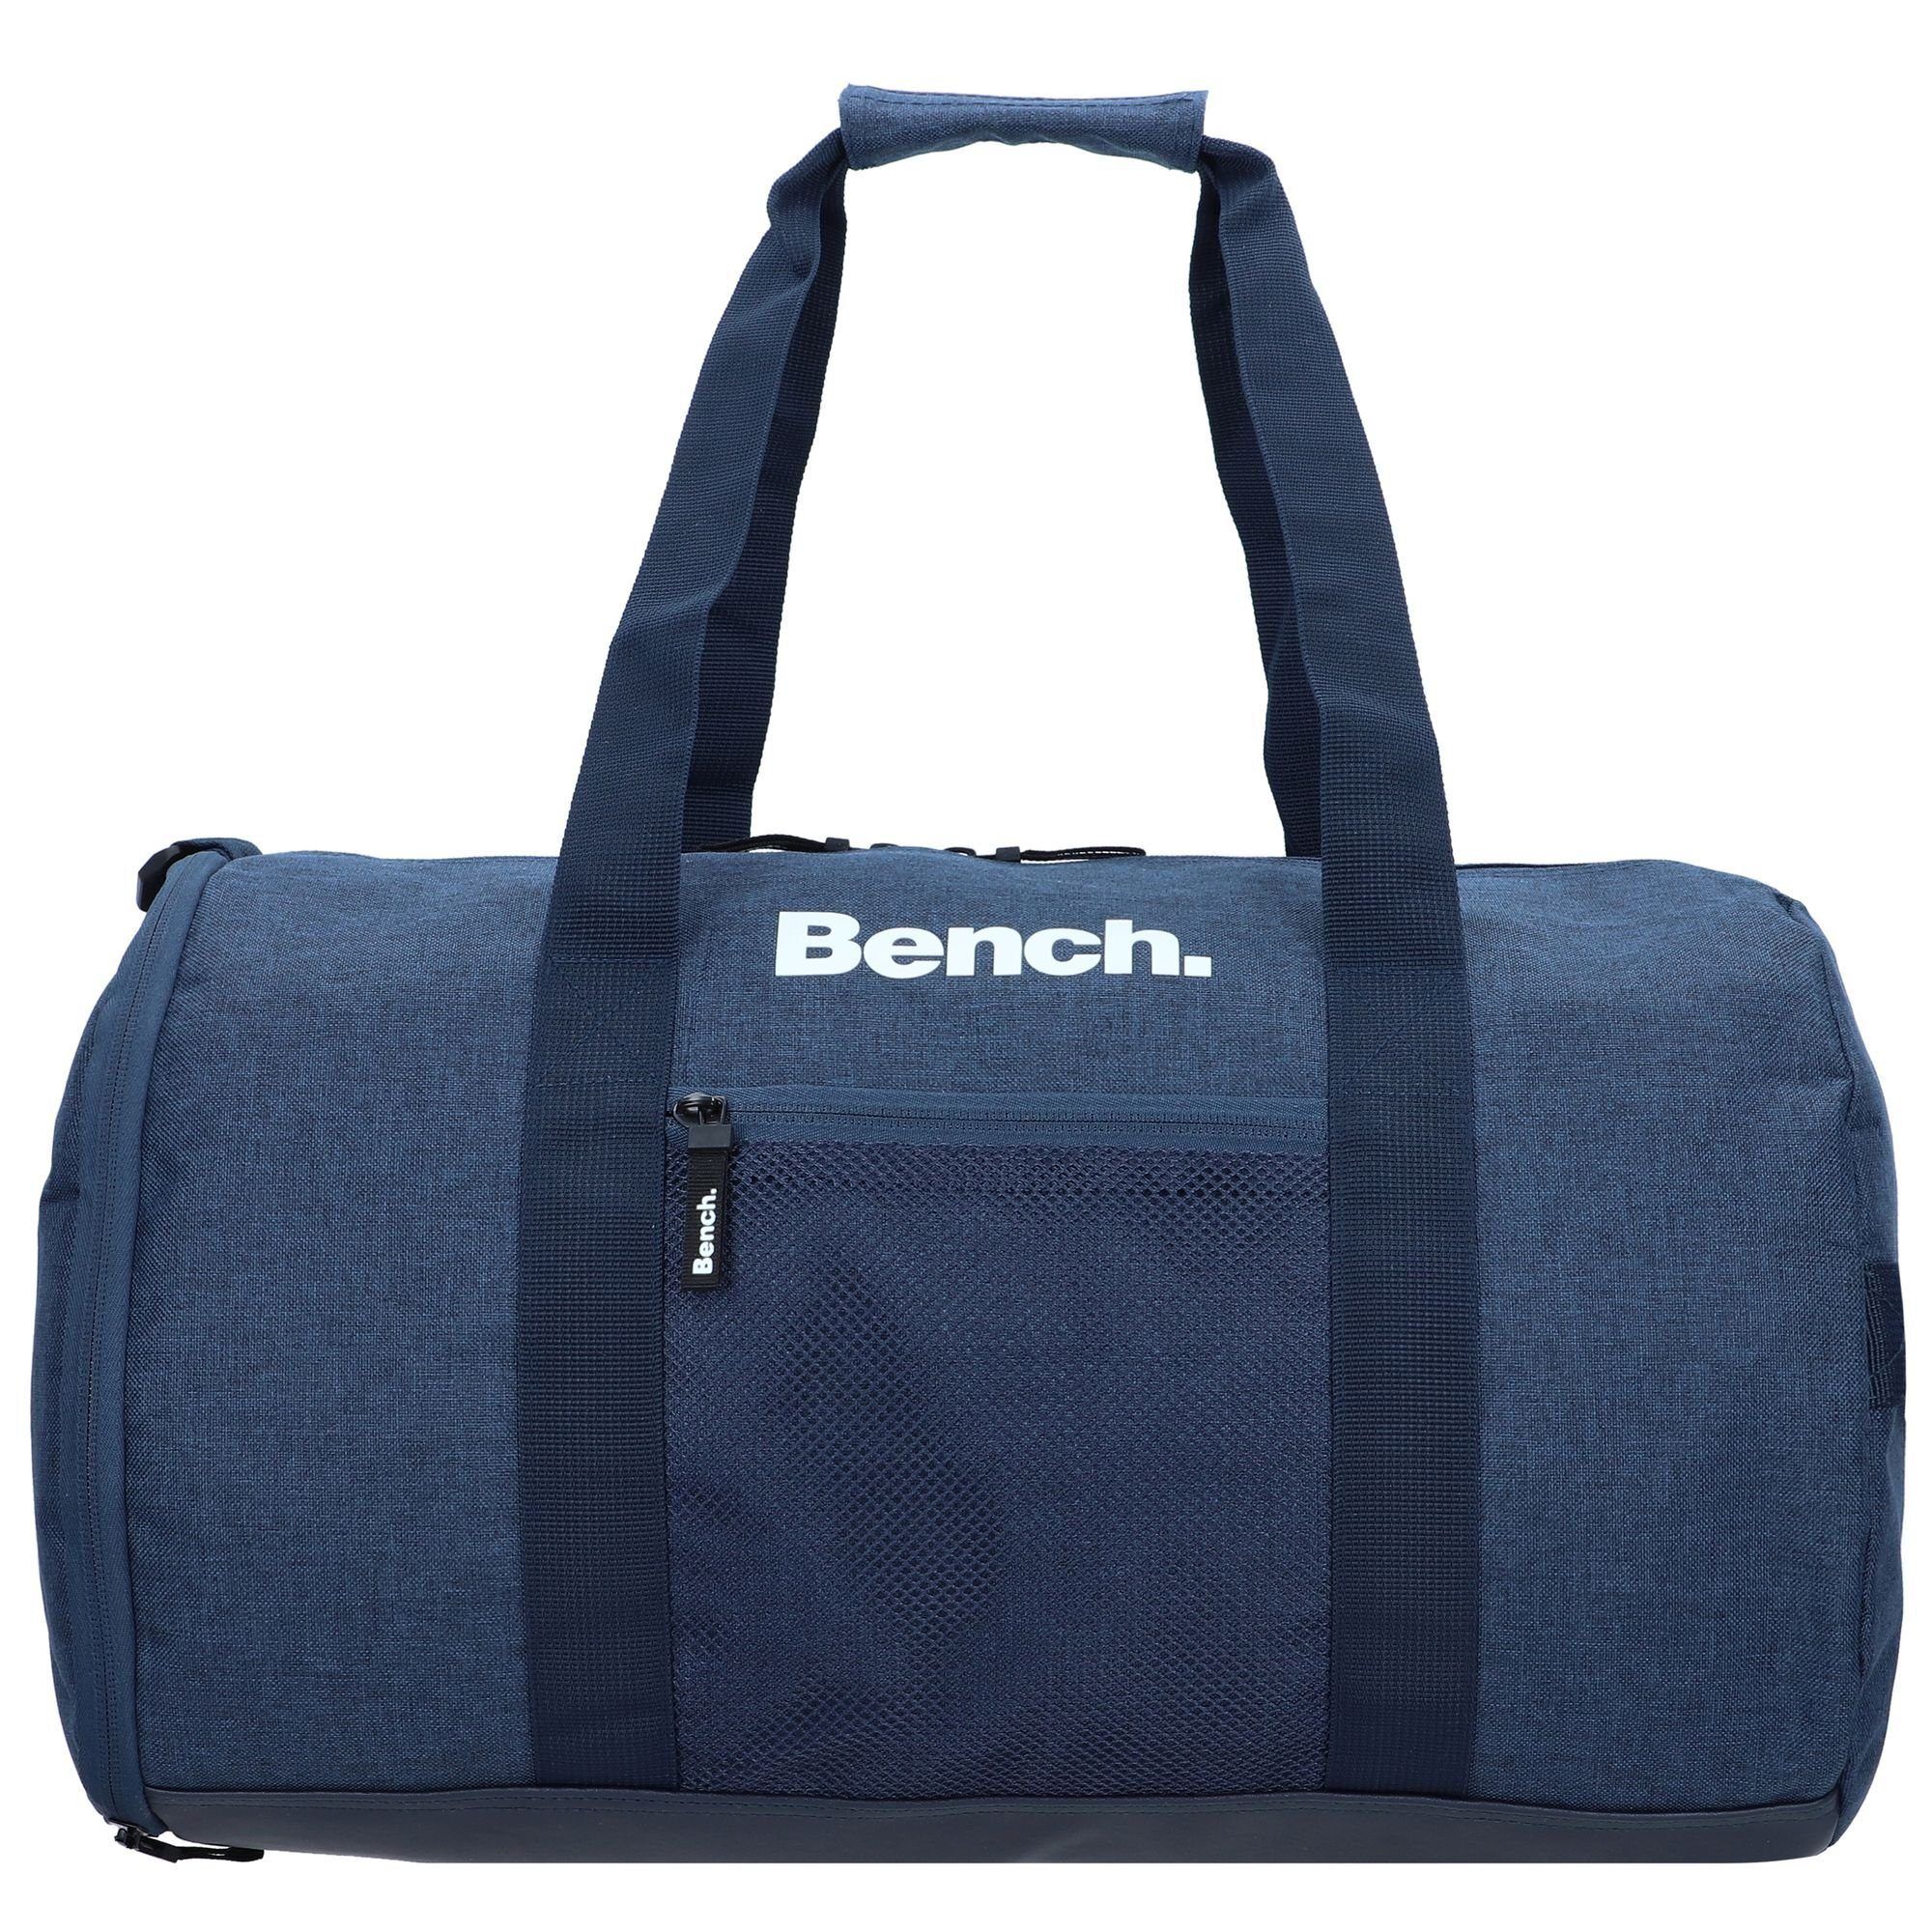 Bench. dunkelblau-weiß Classic, Weekender Polyester